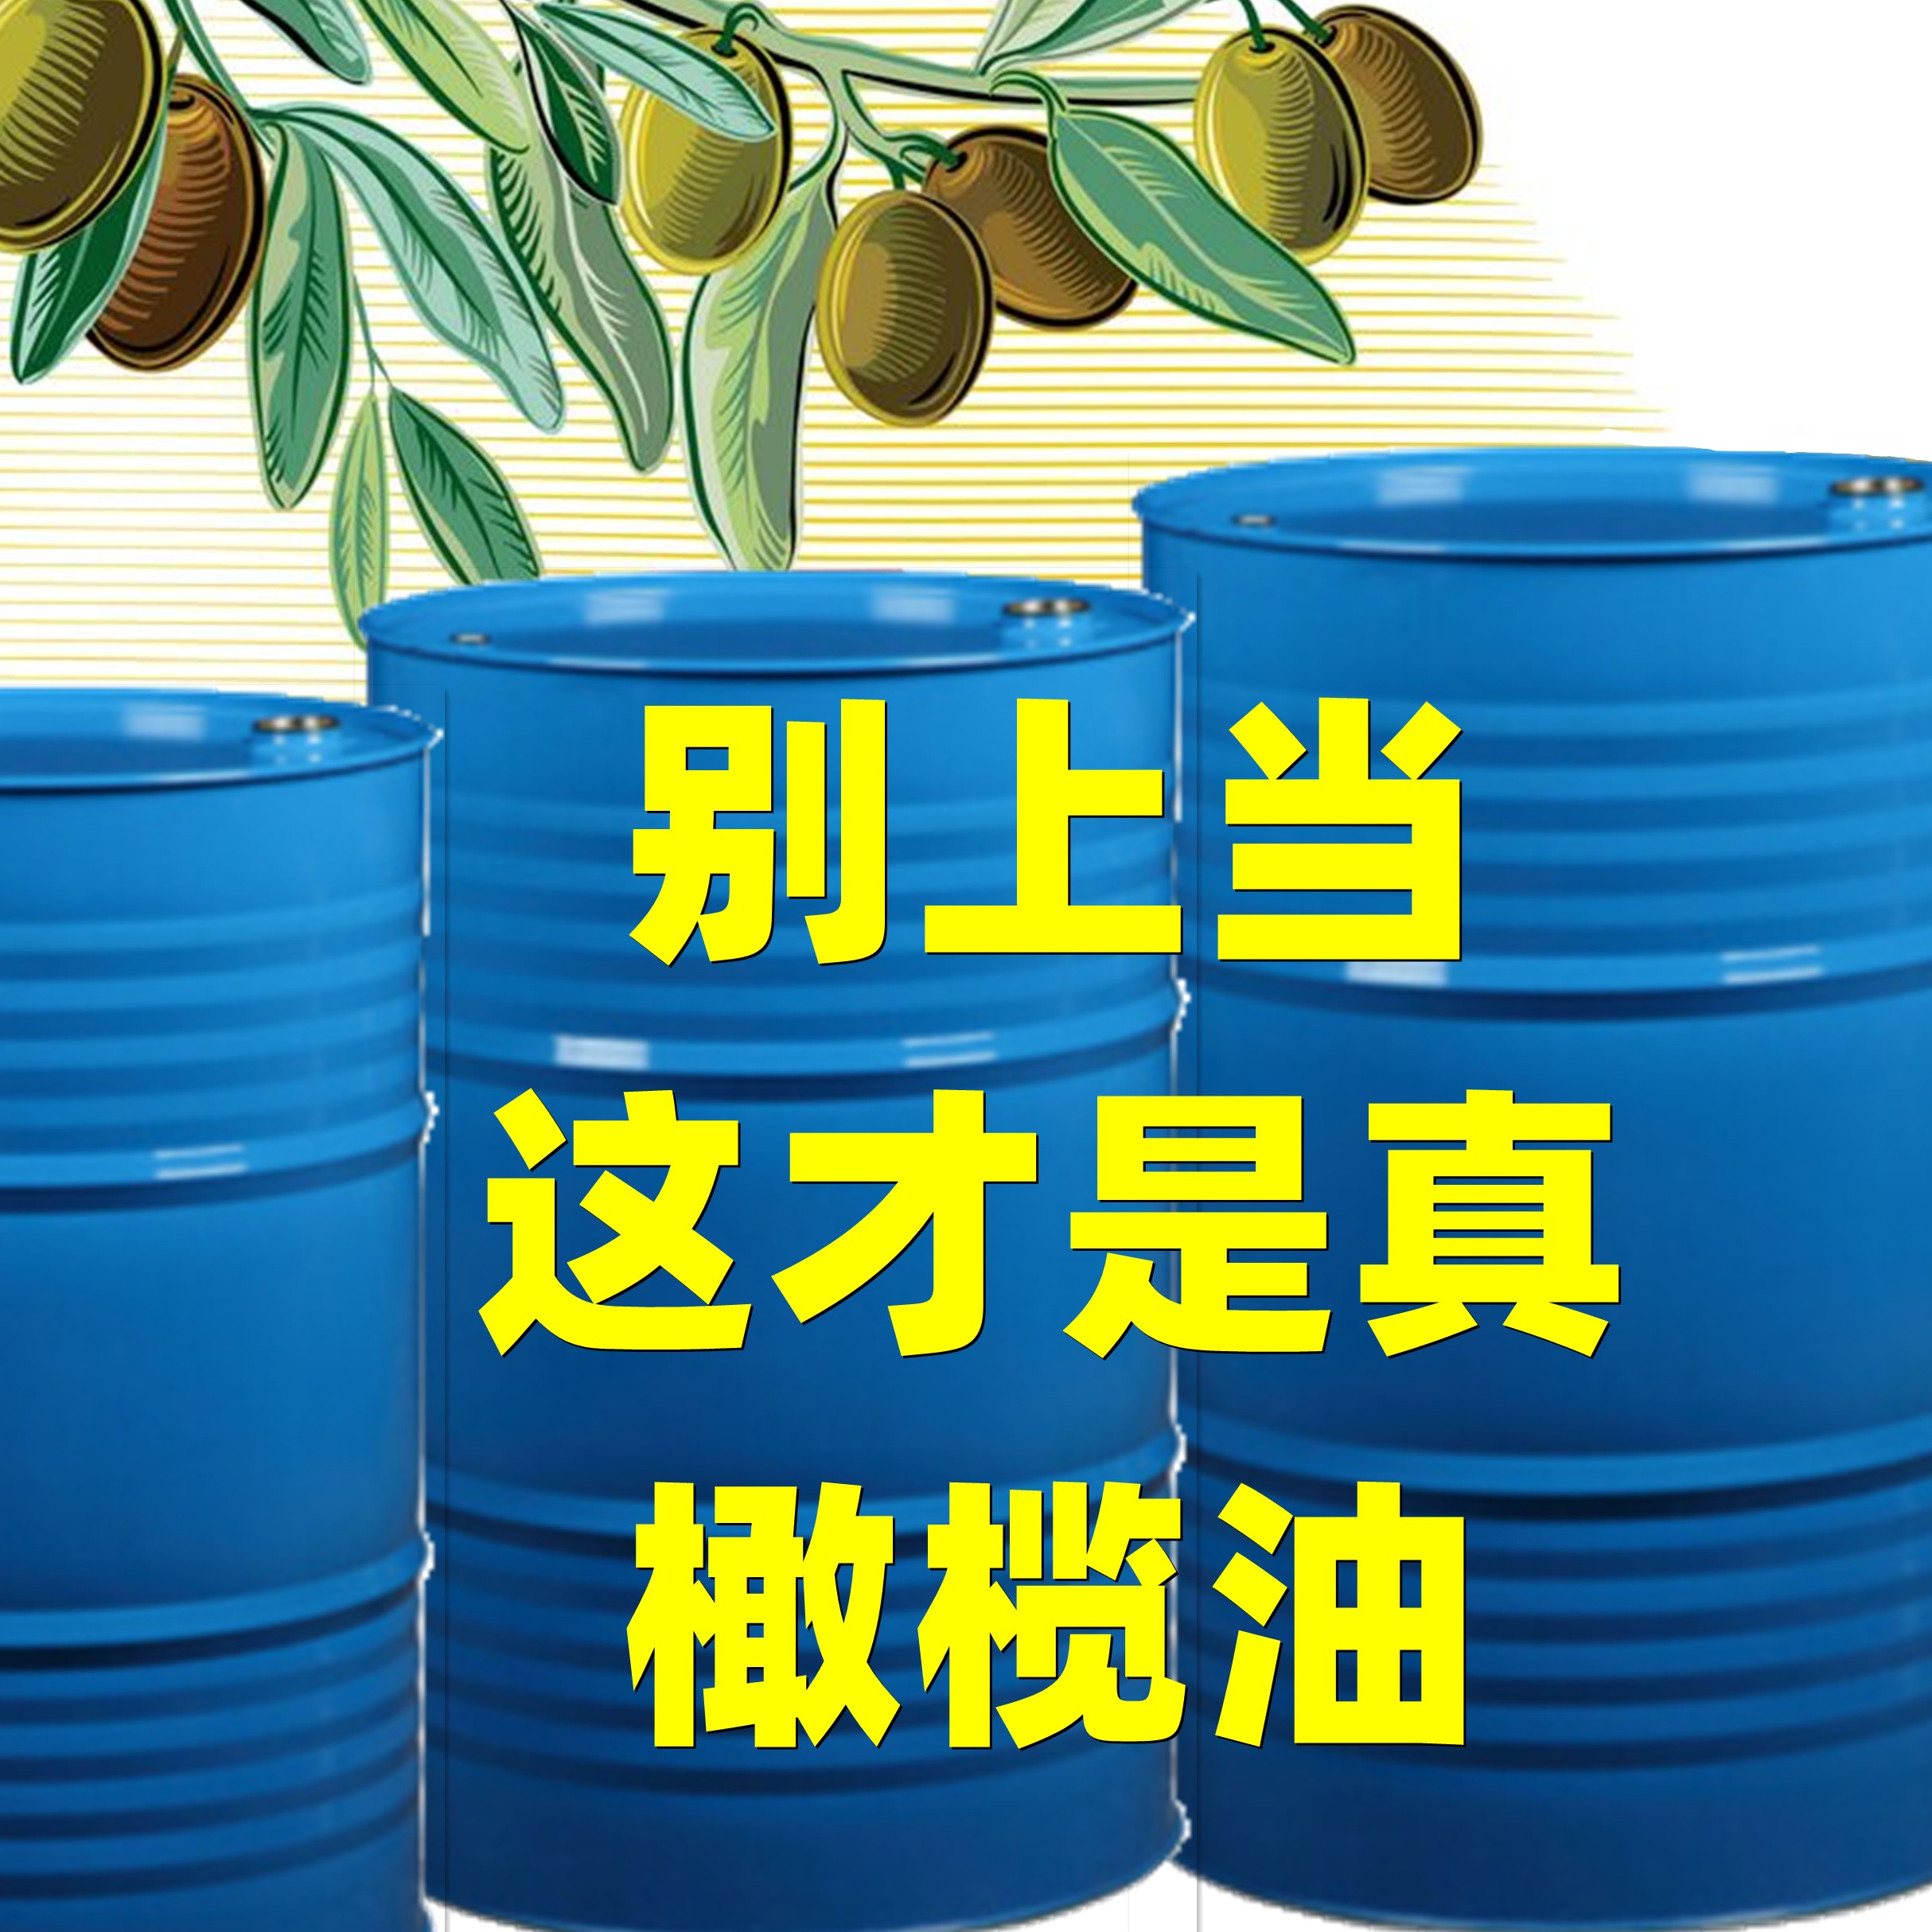 廣東桶裝橄欖油廠家,食用橄欖油品牌排行榜